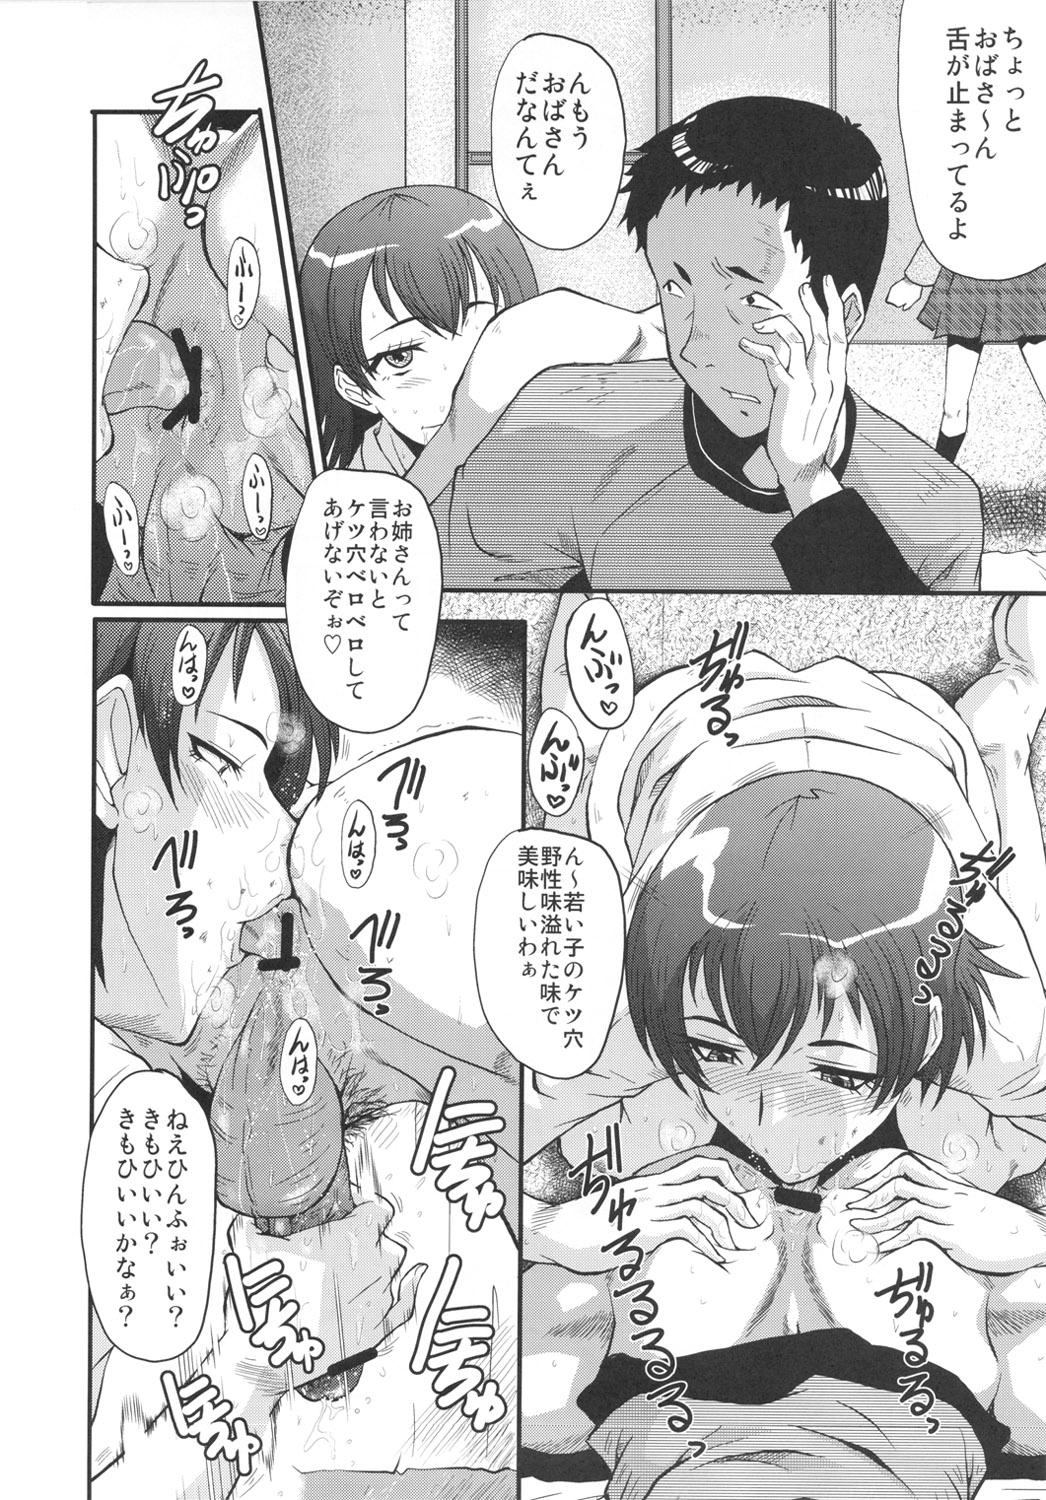 Ruiva Urabambi Vol. 43 TOARU - Toaru majutsu no index Gay Averagedick - Page 7